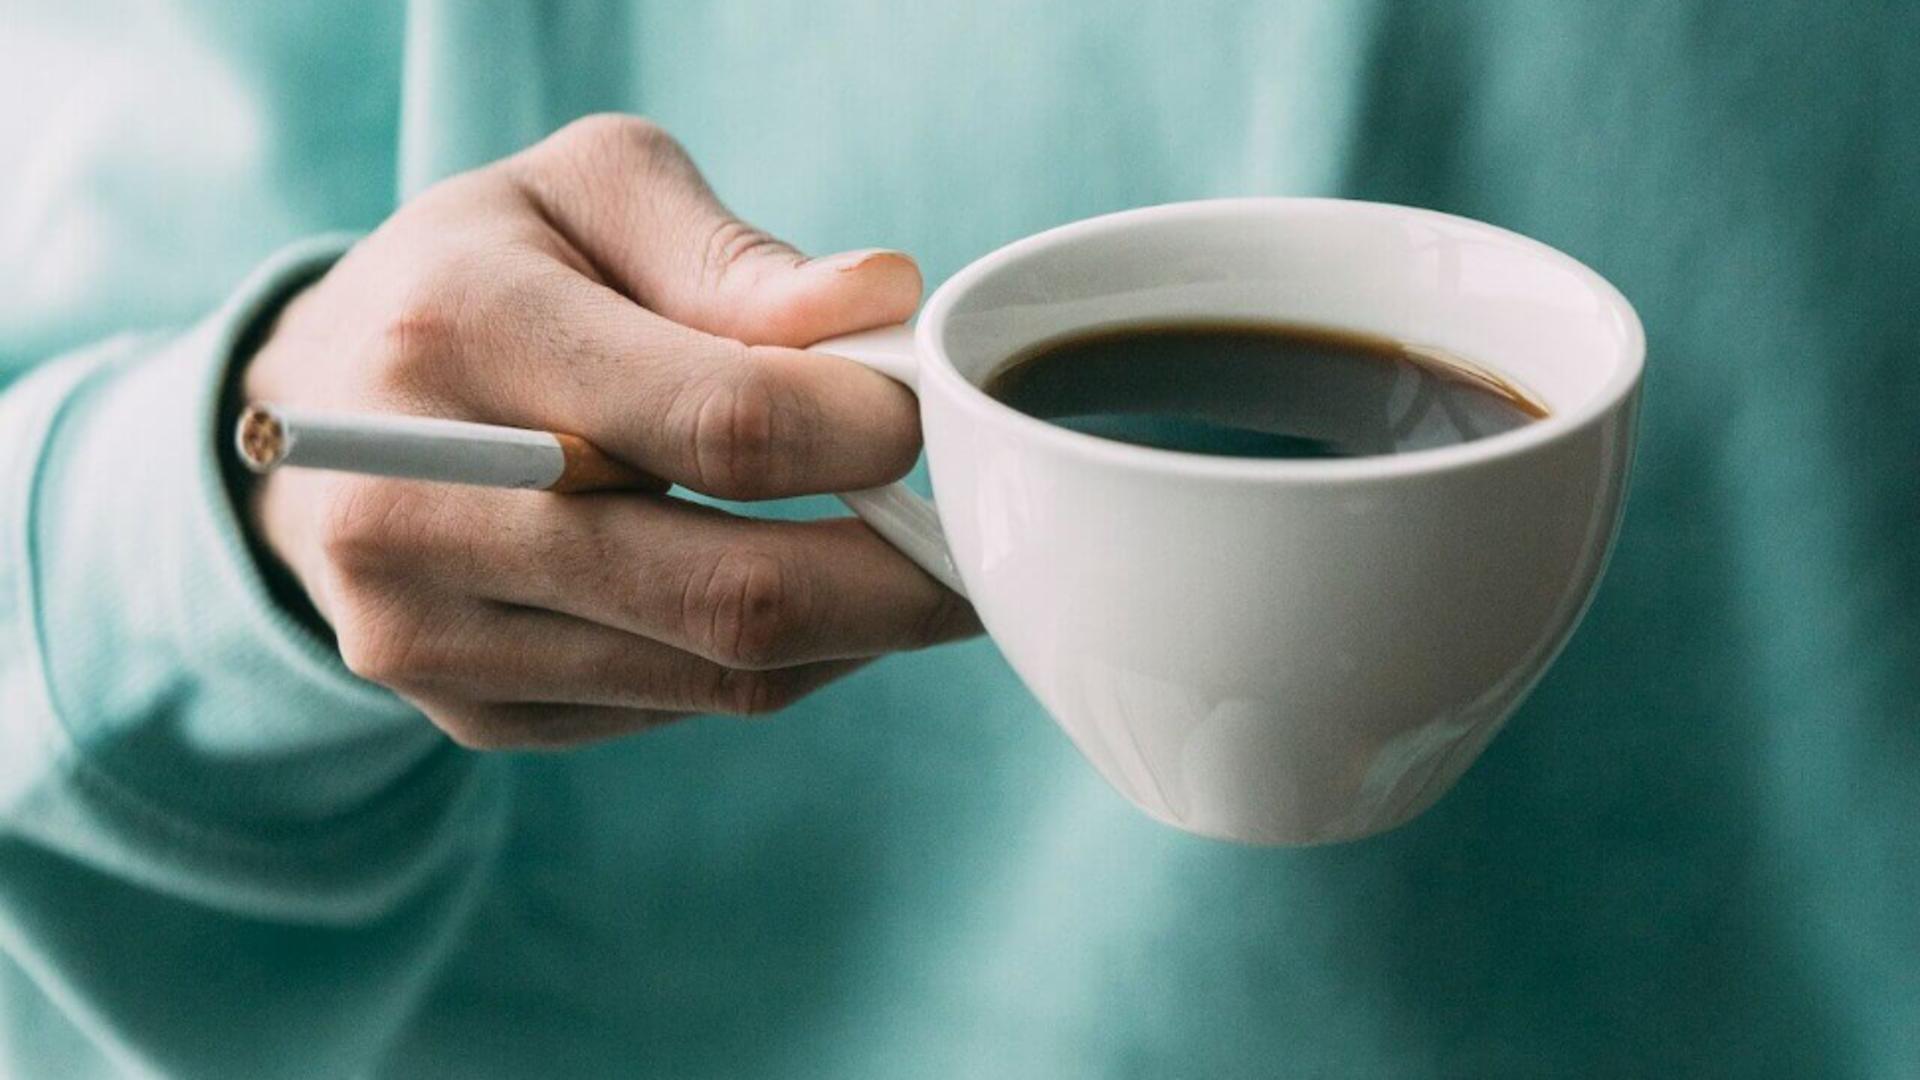 Fumatul și cafeaua sunt factori de protecţie pentru o anumită boală. Declarația unui neurolog care aruncă miturile în aer